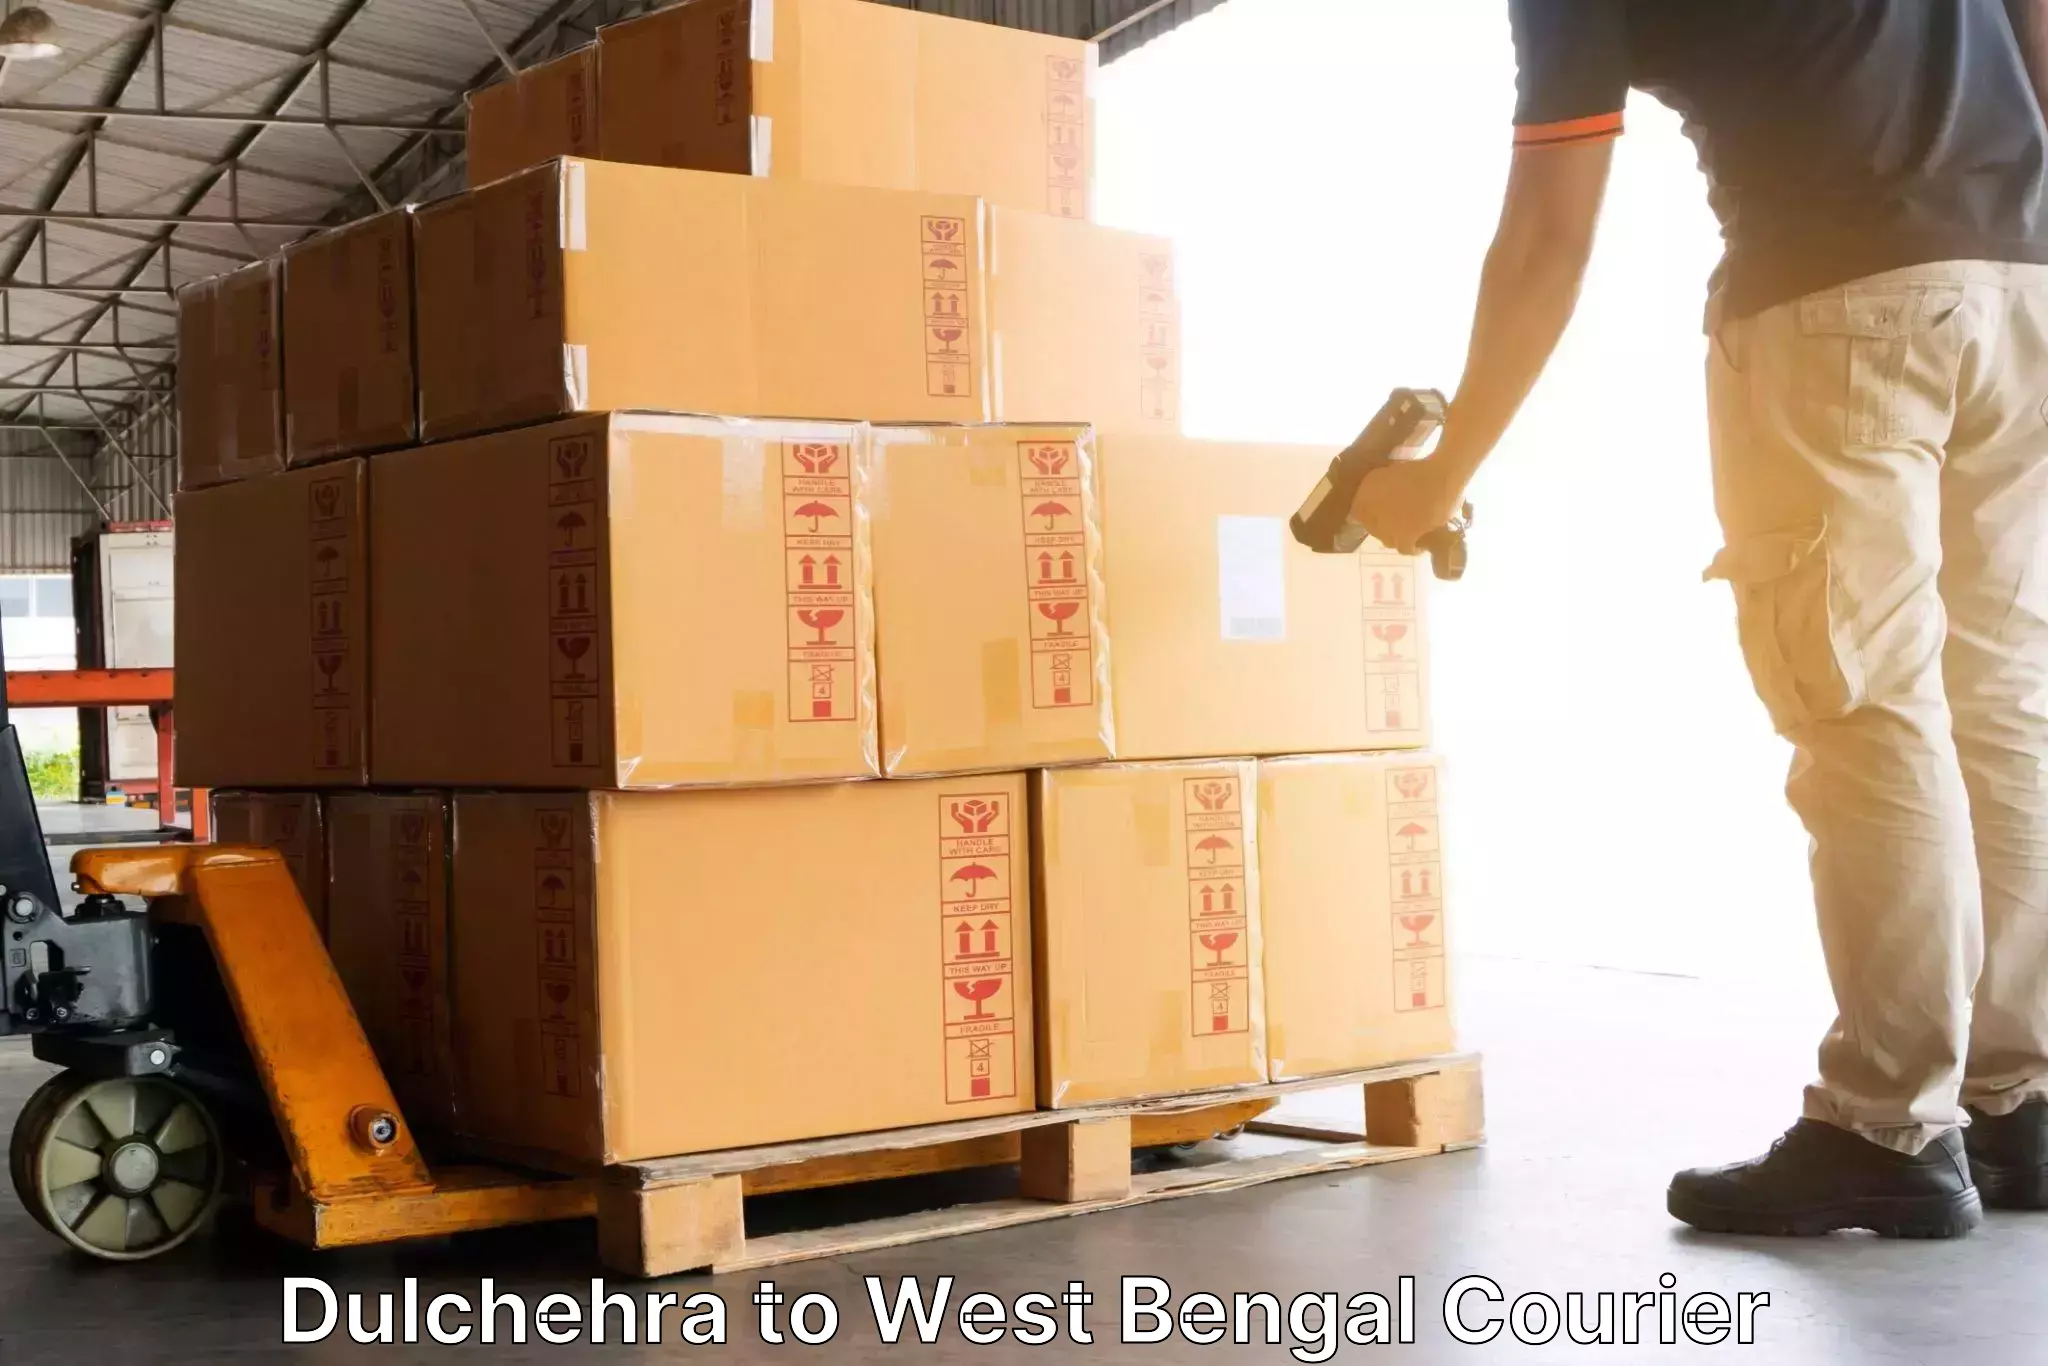 Flexible delivery schedules in Dulchehra to Gopalnagar